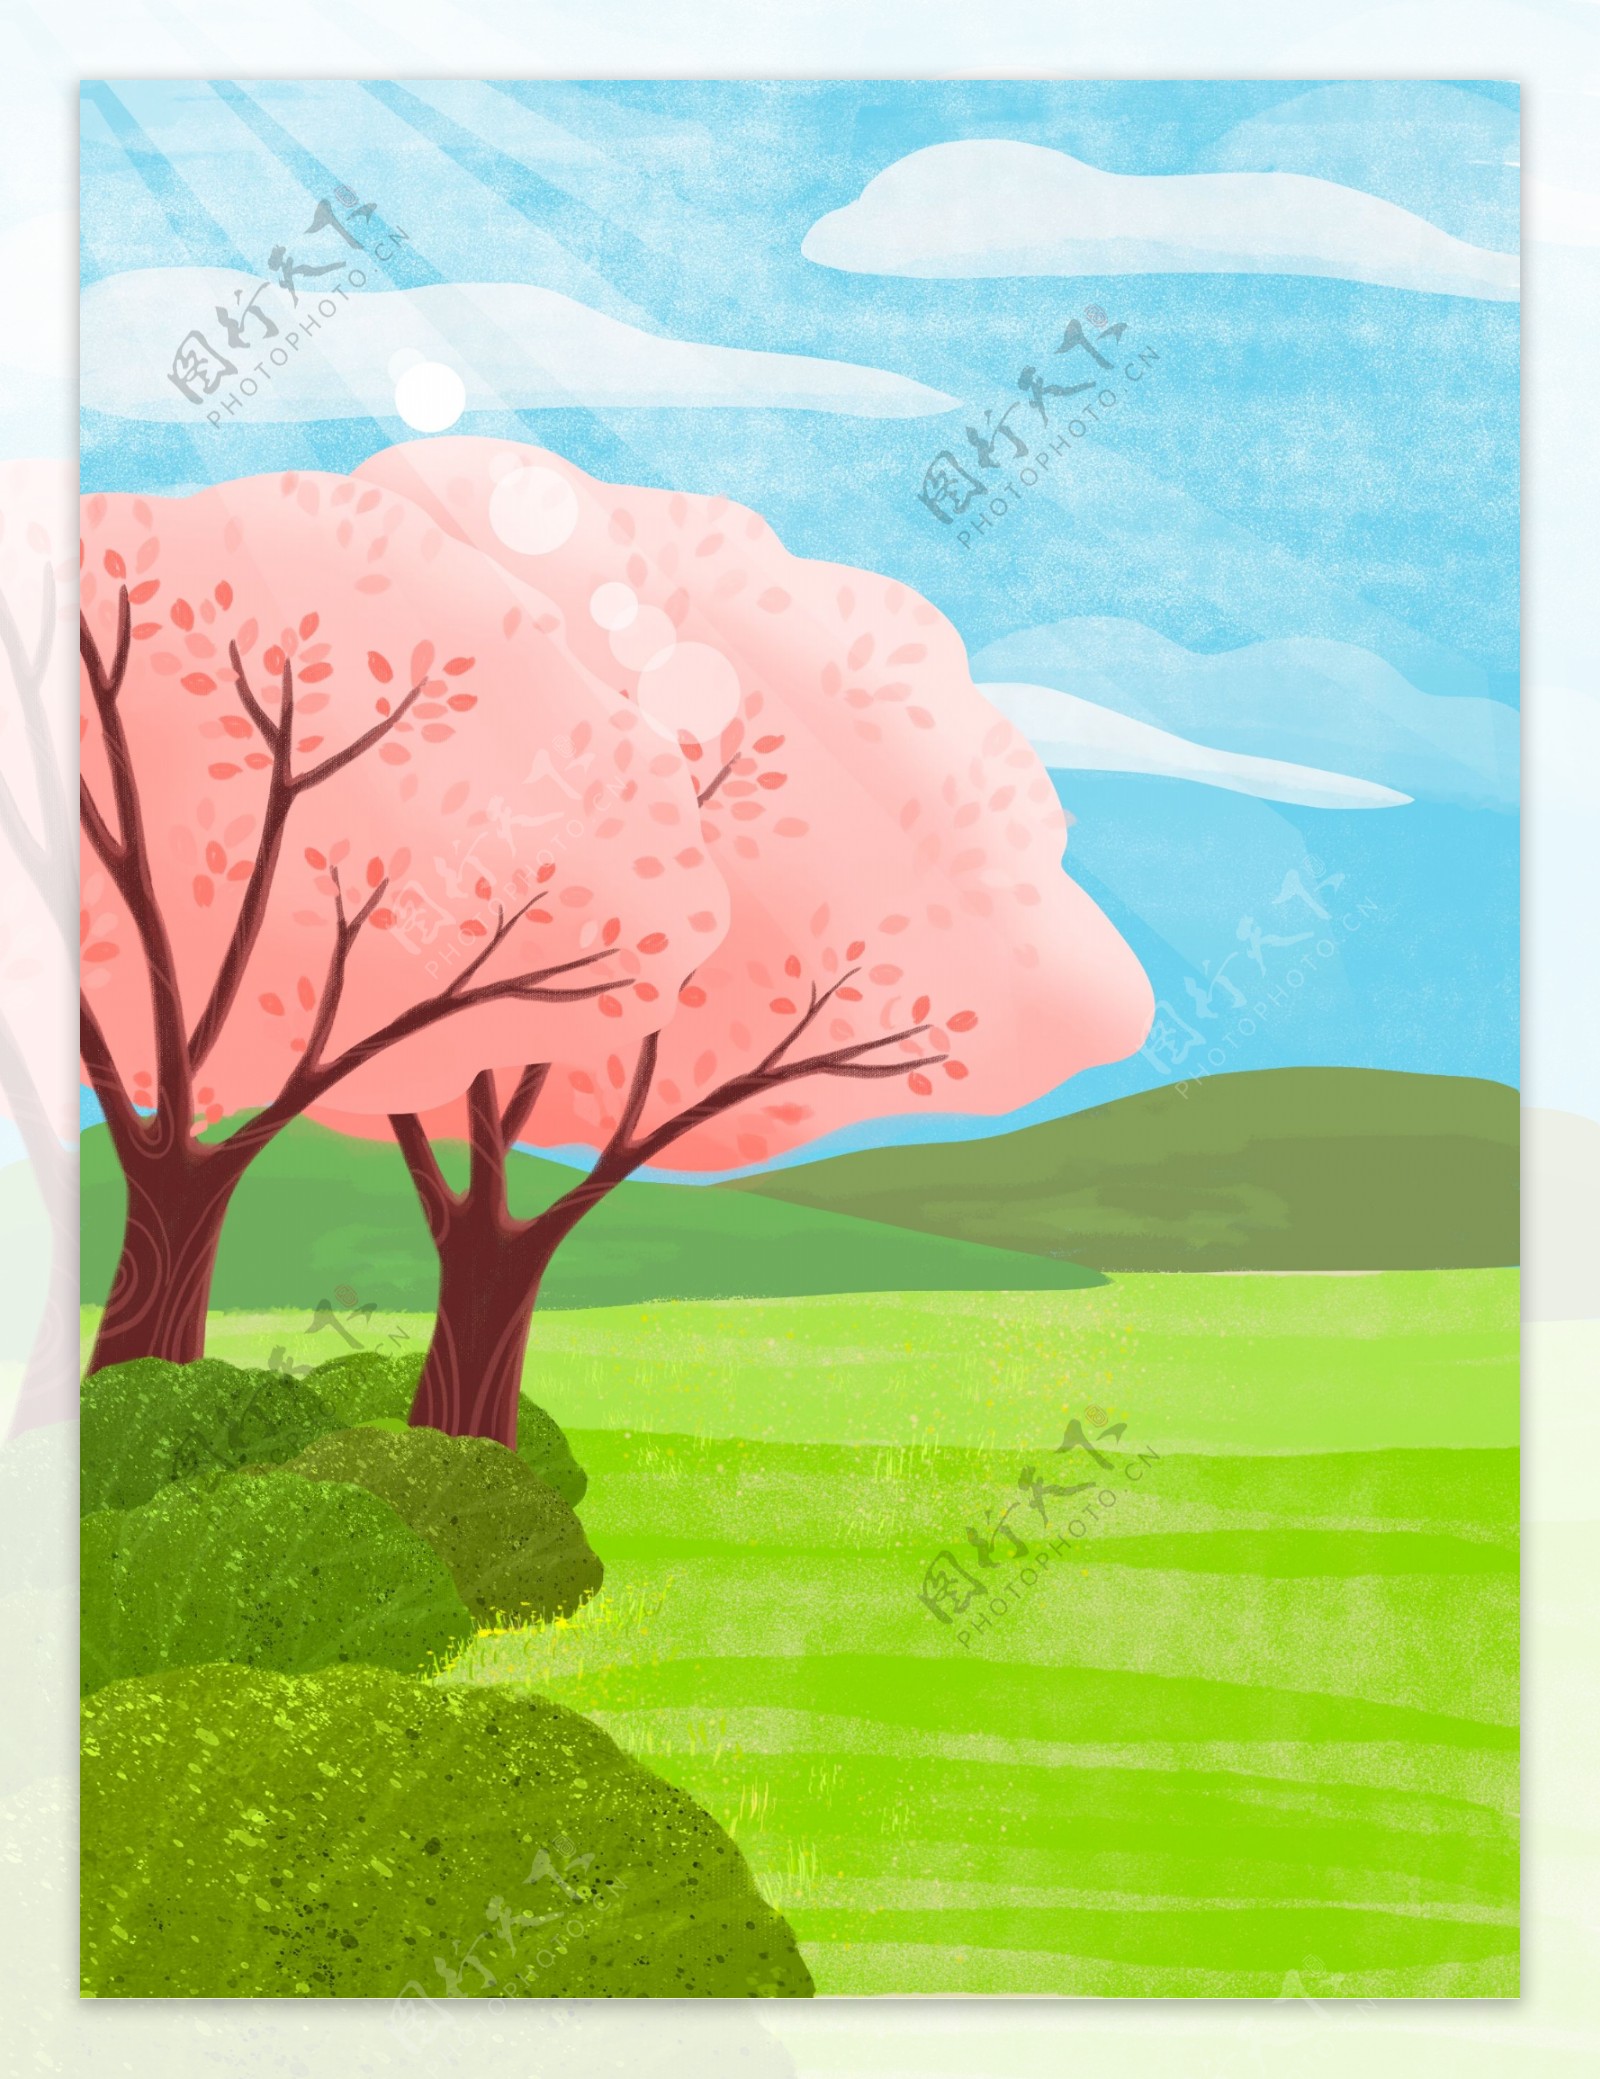 唯美手绘绿色春天樱花树插画背景